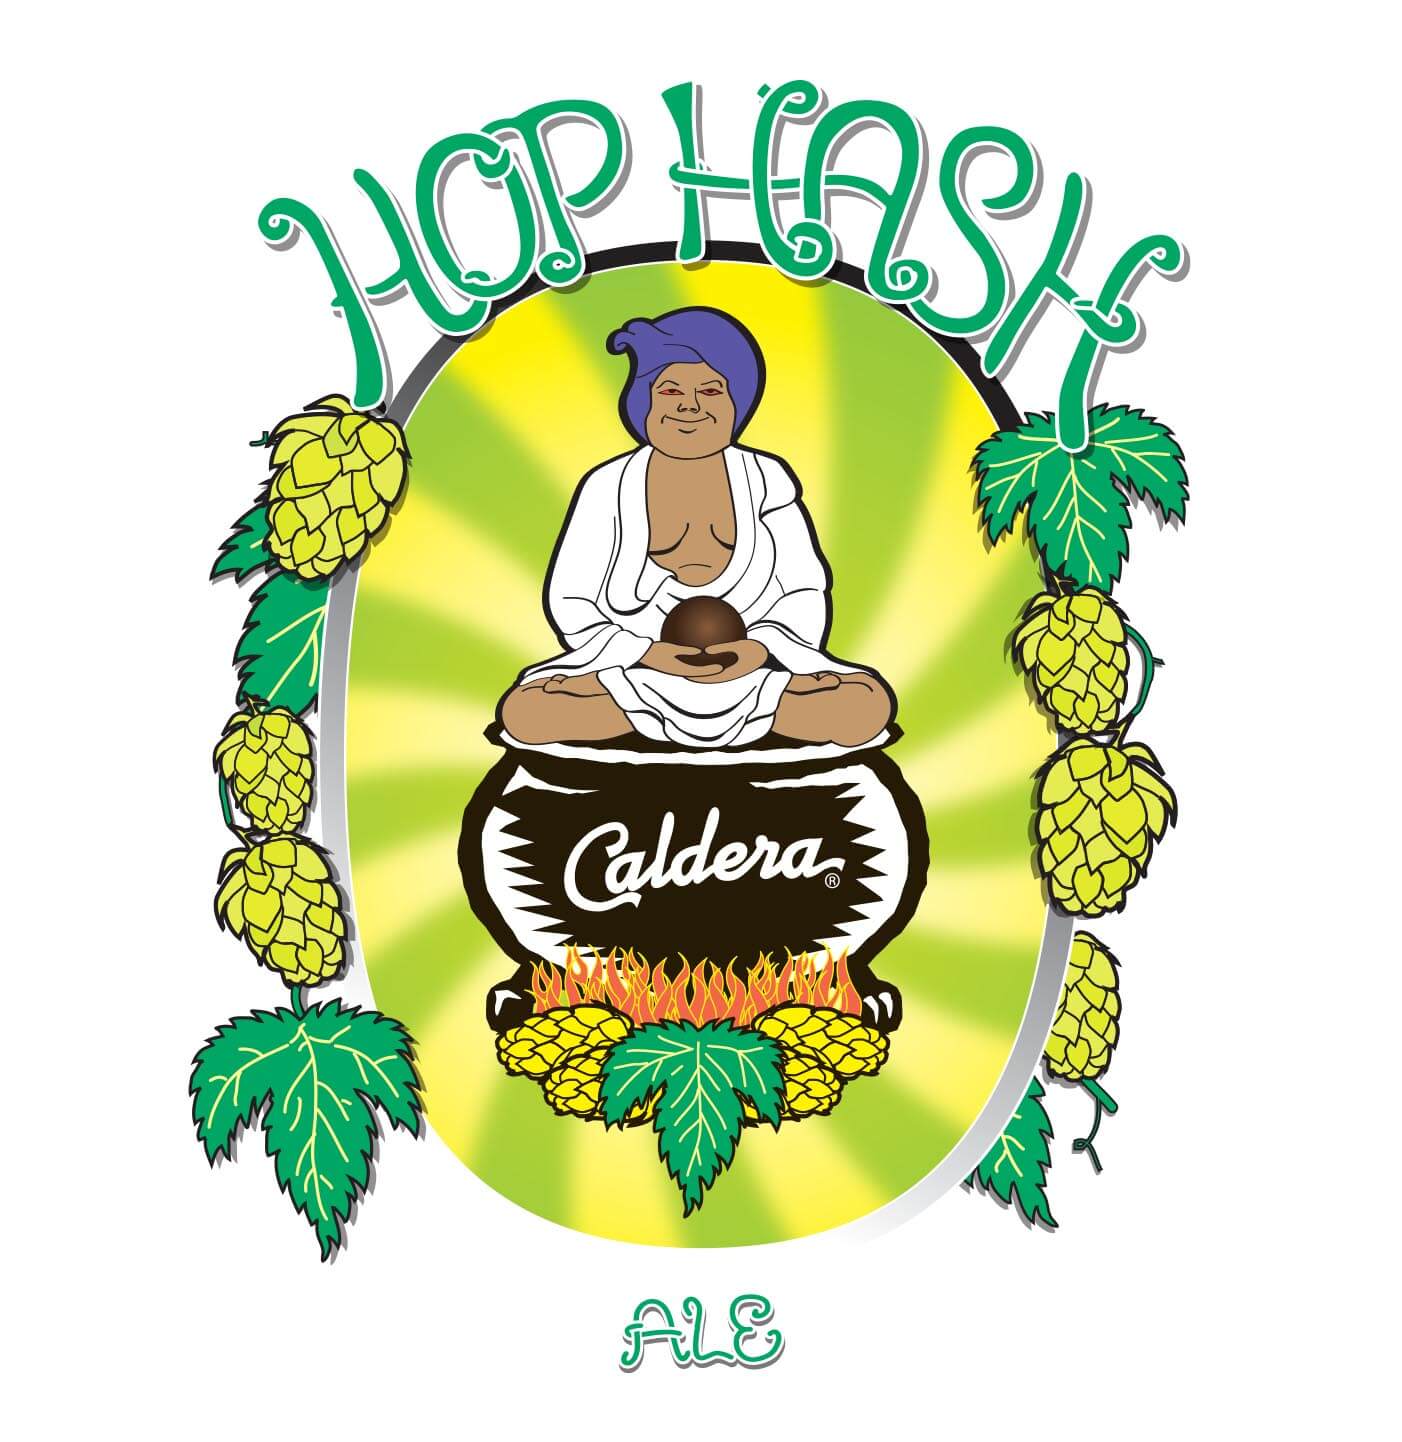 original-hop-hash-beer-label-by-vapordave